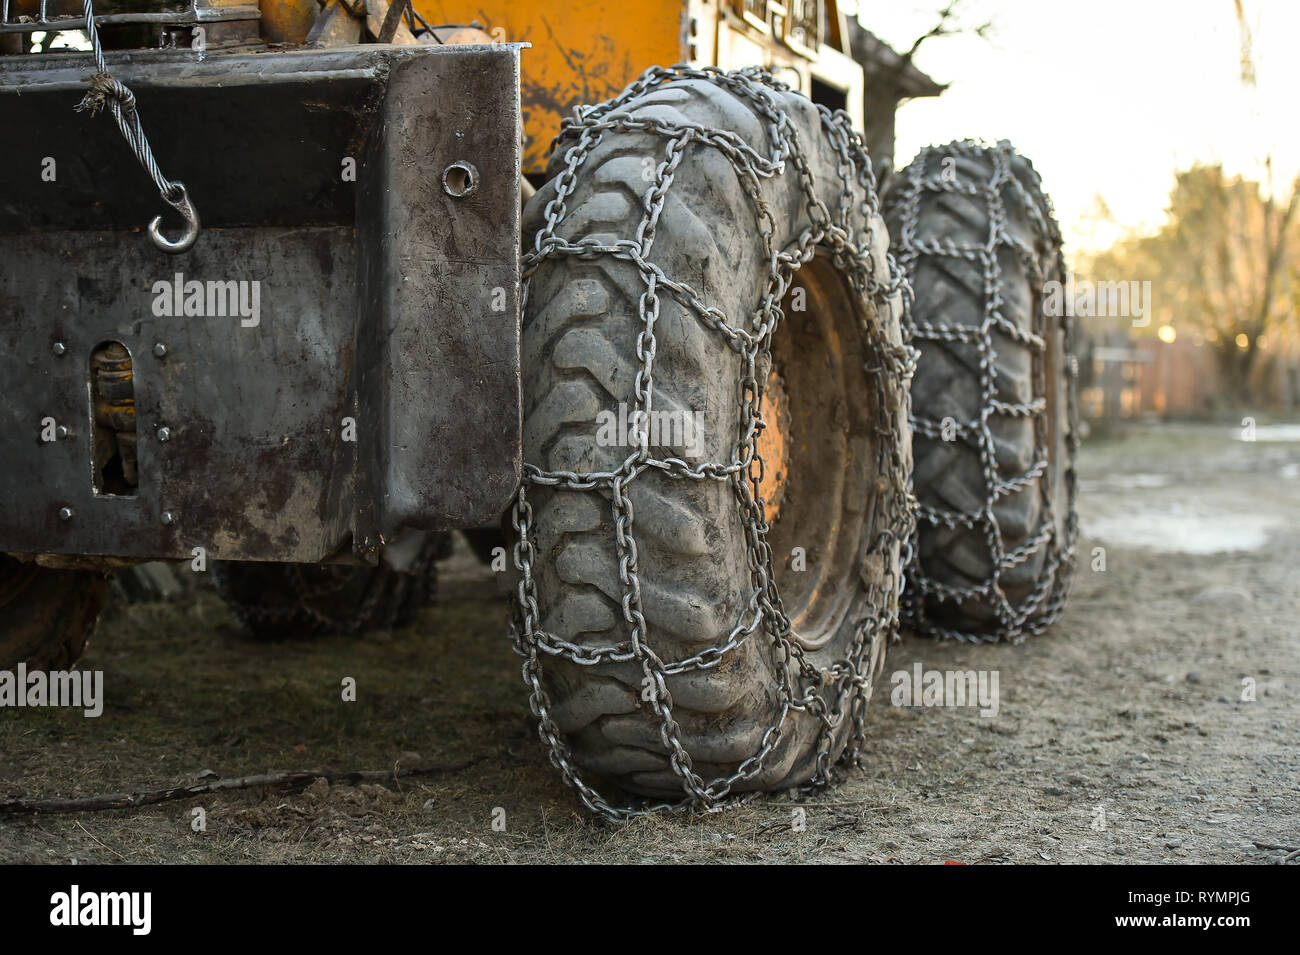 Detalles de la foto con nieve cadenas de neumáticos en las ruedas de camiones grandes Foto de stock